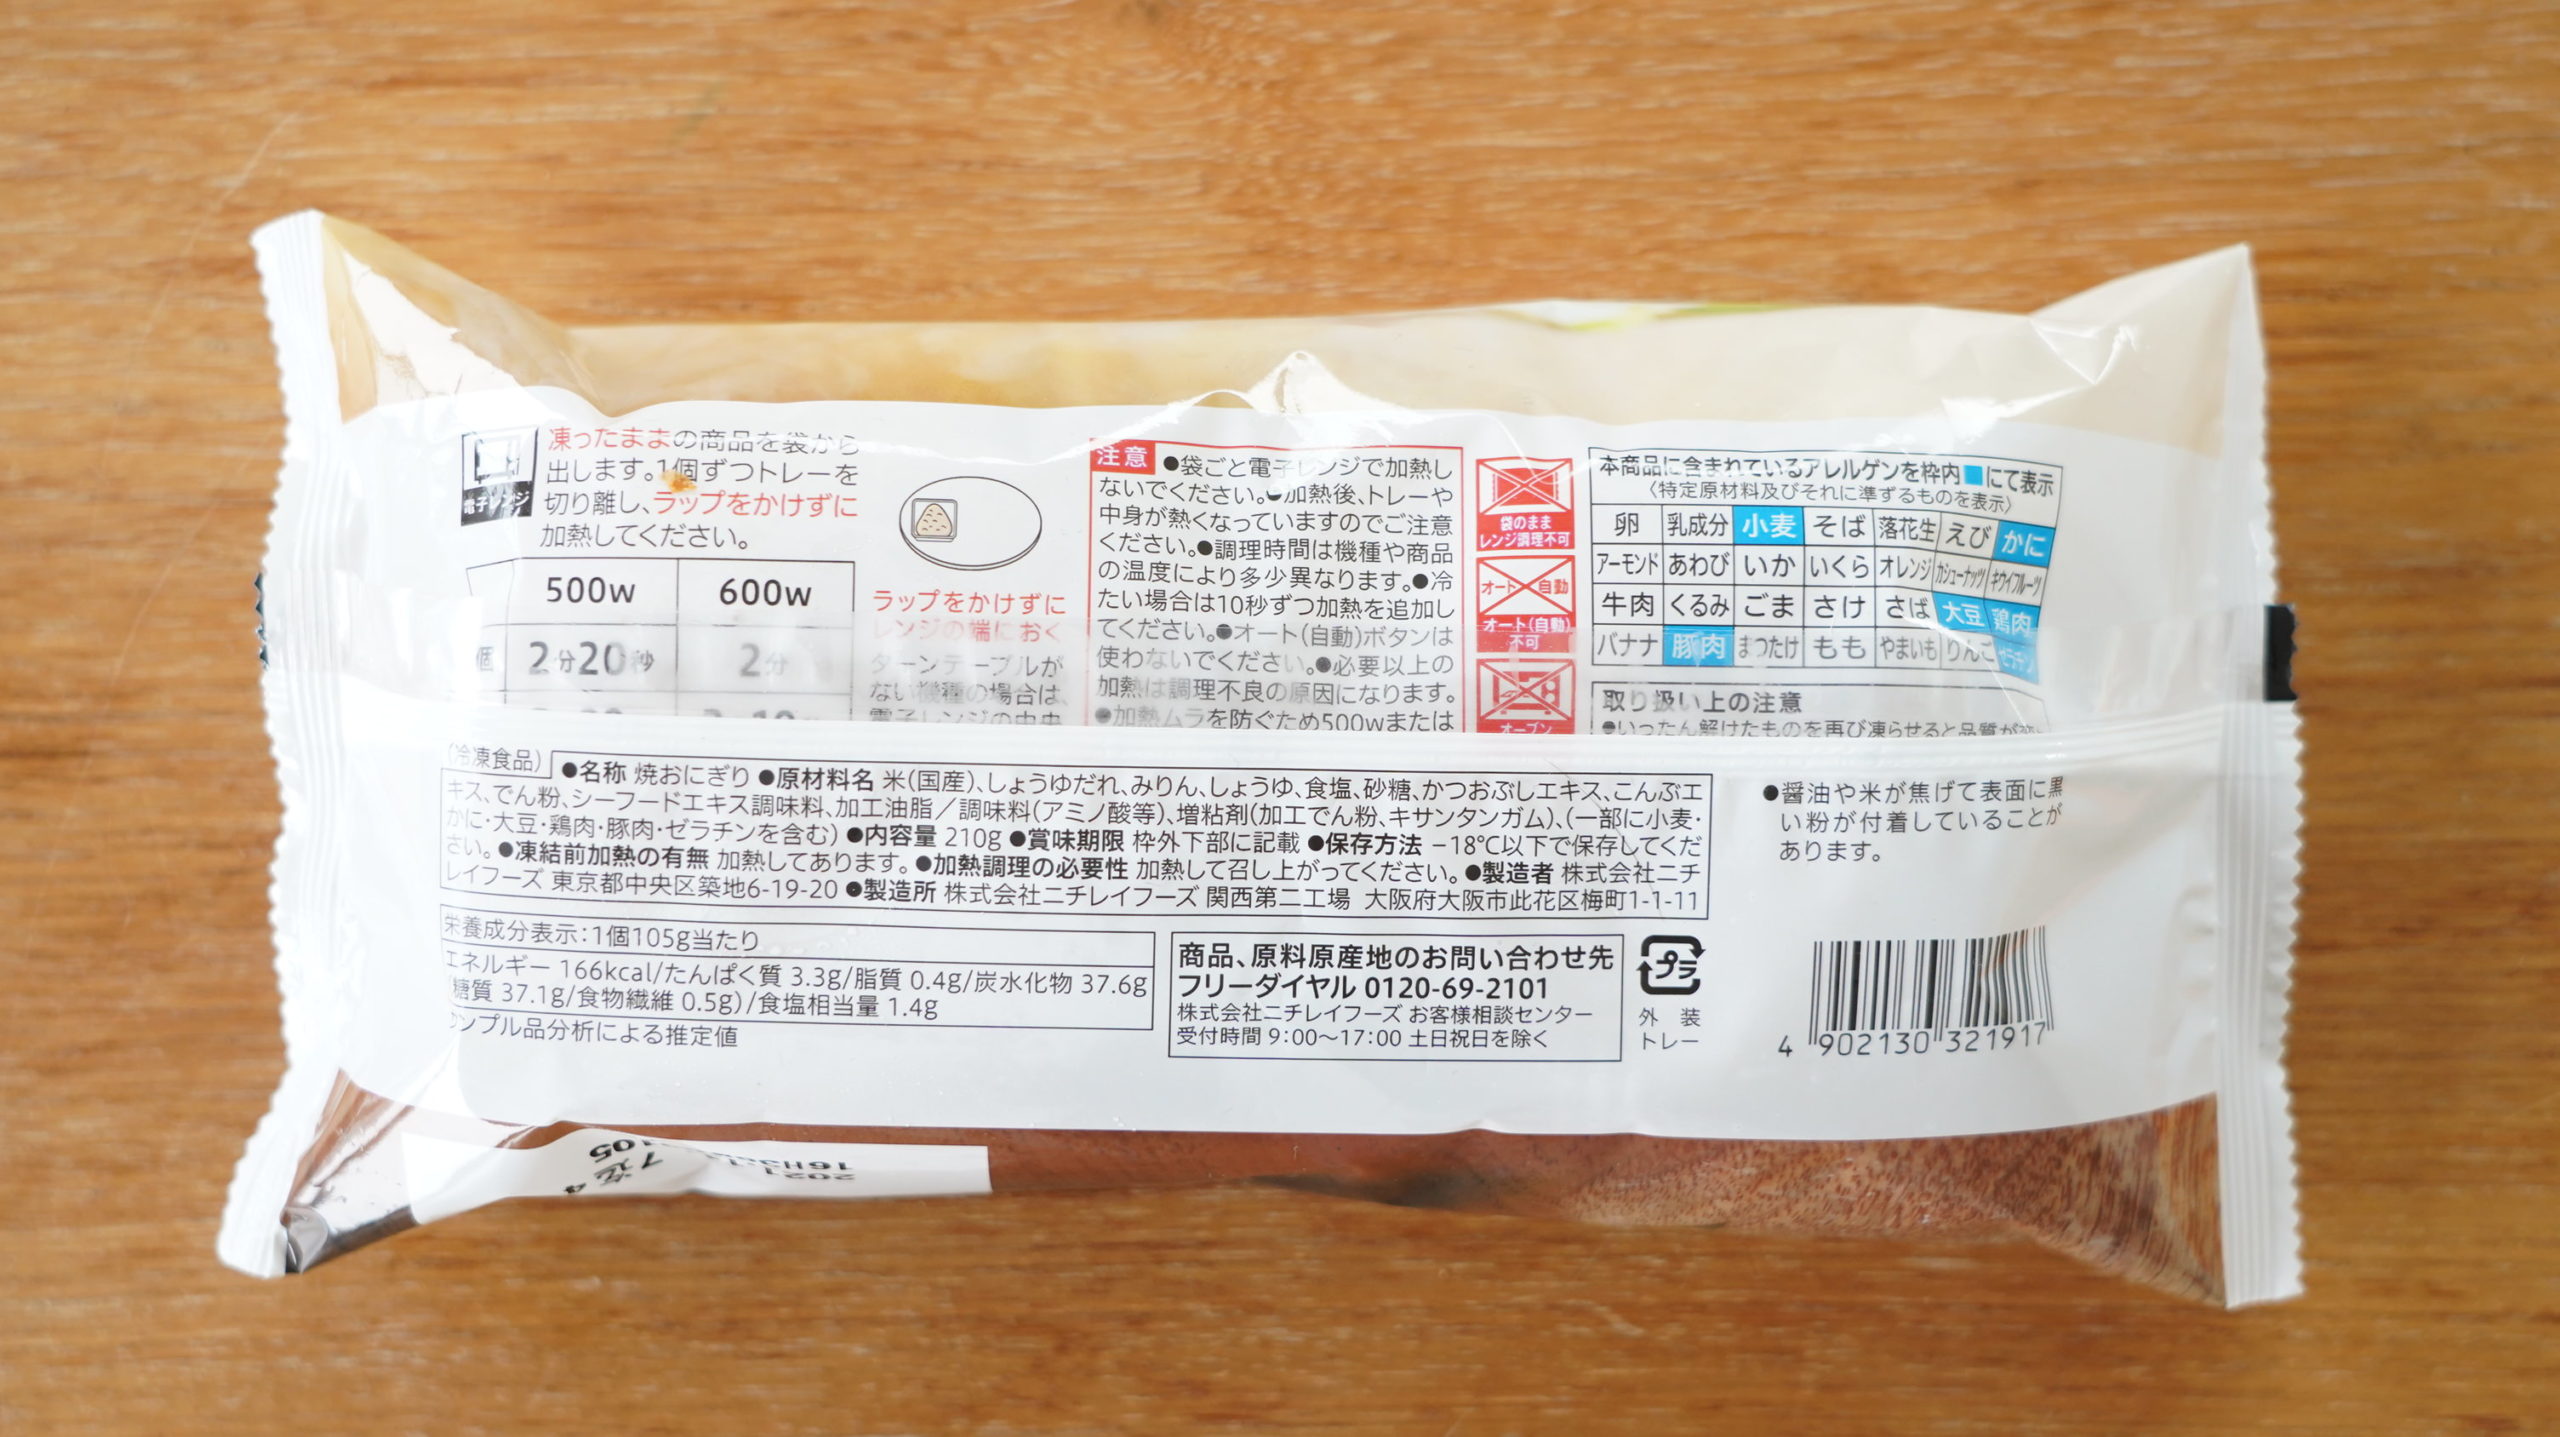 セブンイレブンの冷凍食品「香ばしい焼おにぎり」のパッケージ裏面の写真